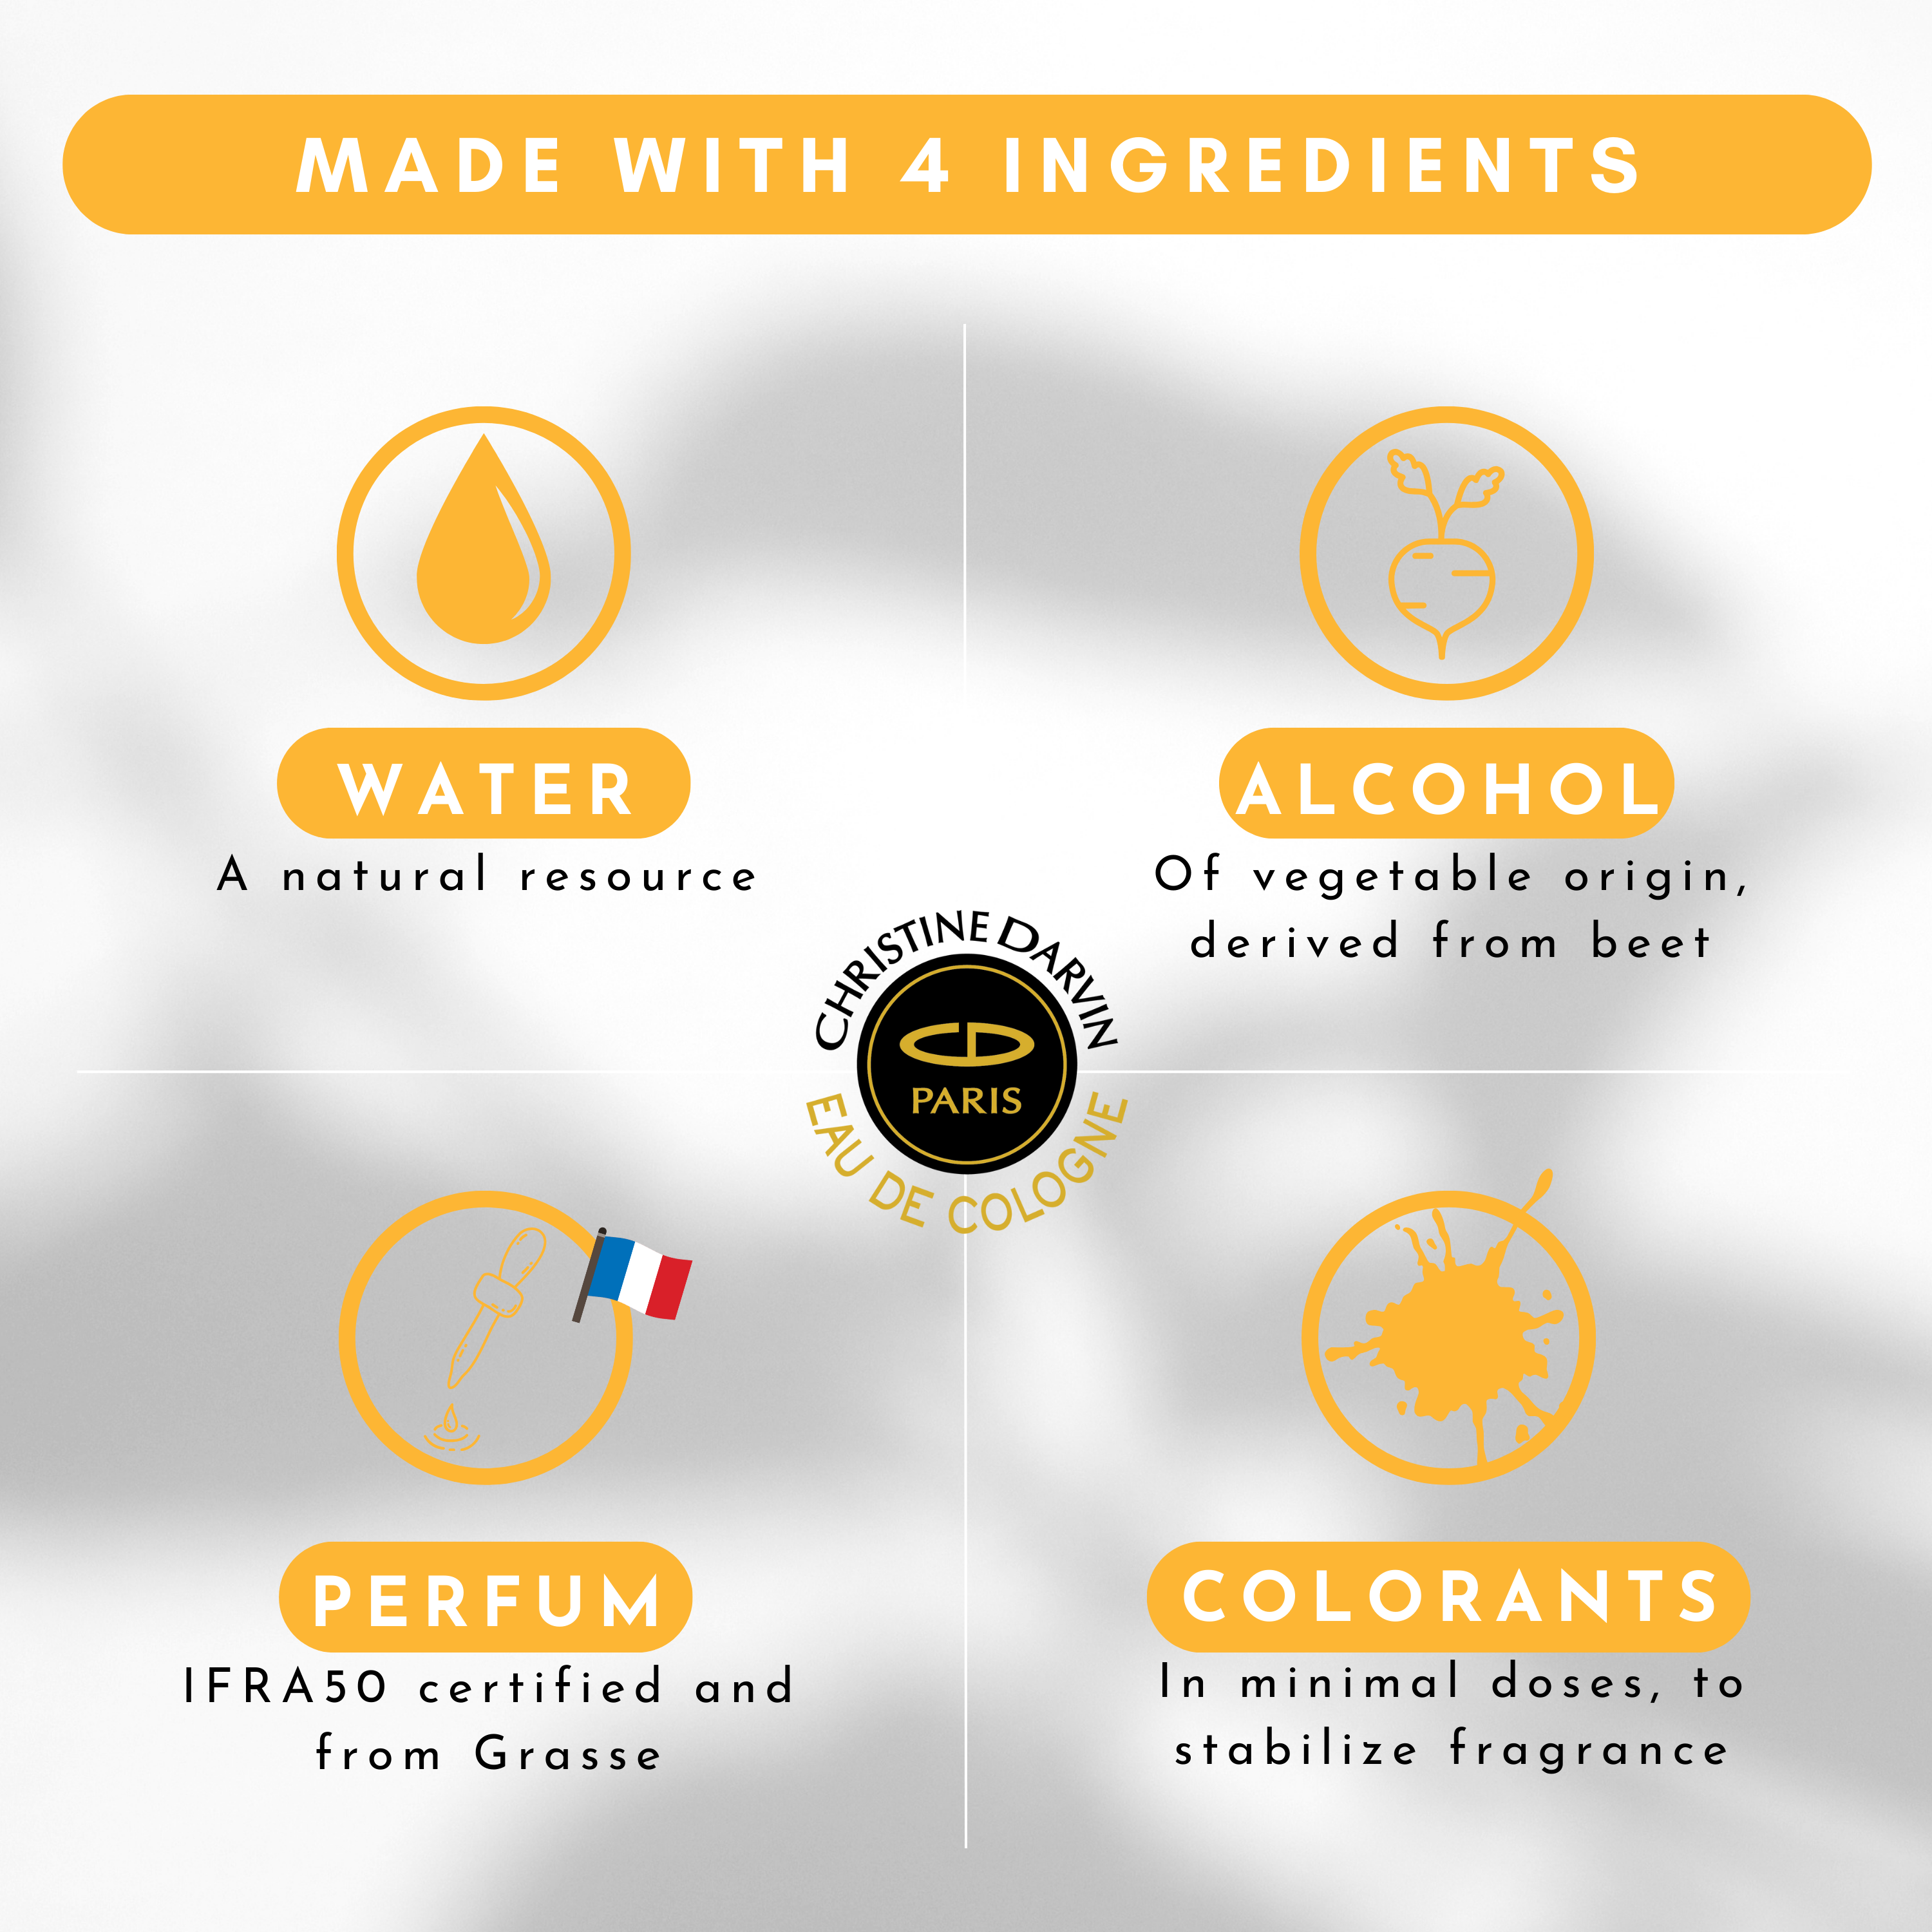 Ingrédient eau de Cologne parfum Fleur d'Oranger 97% natural origin and 100% French